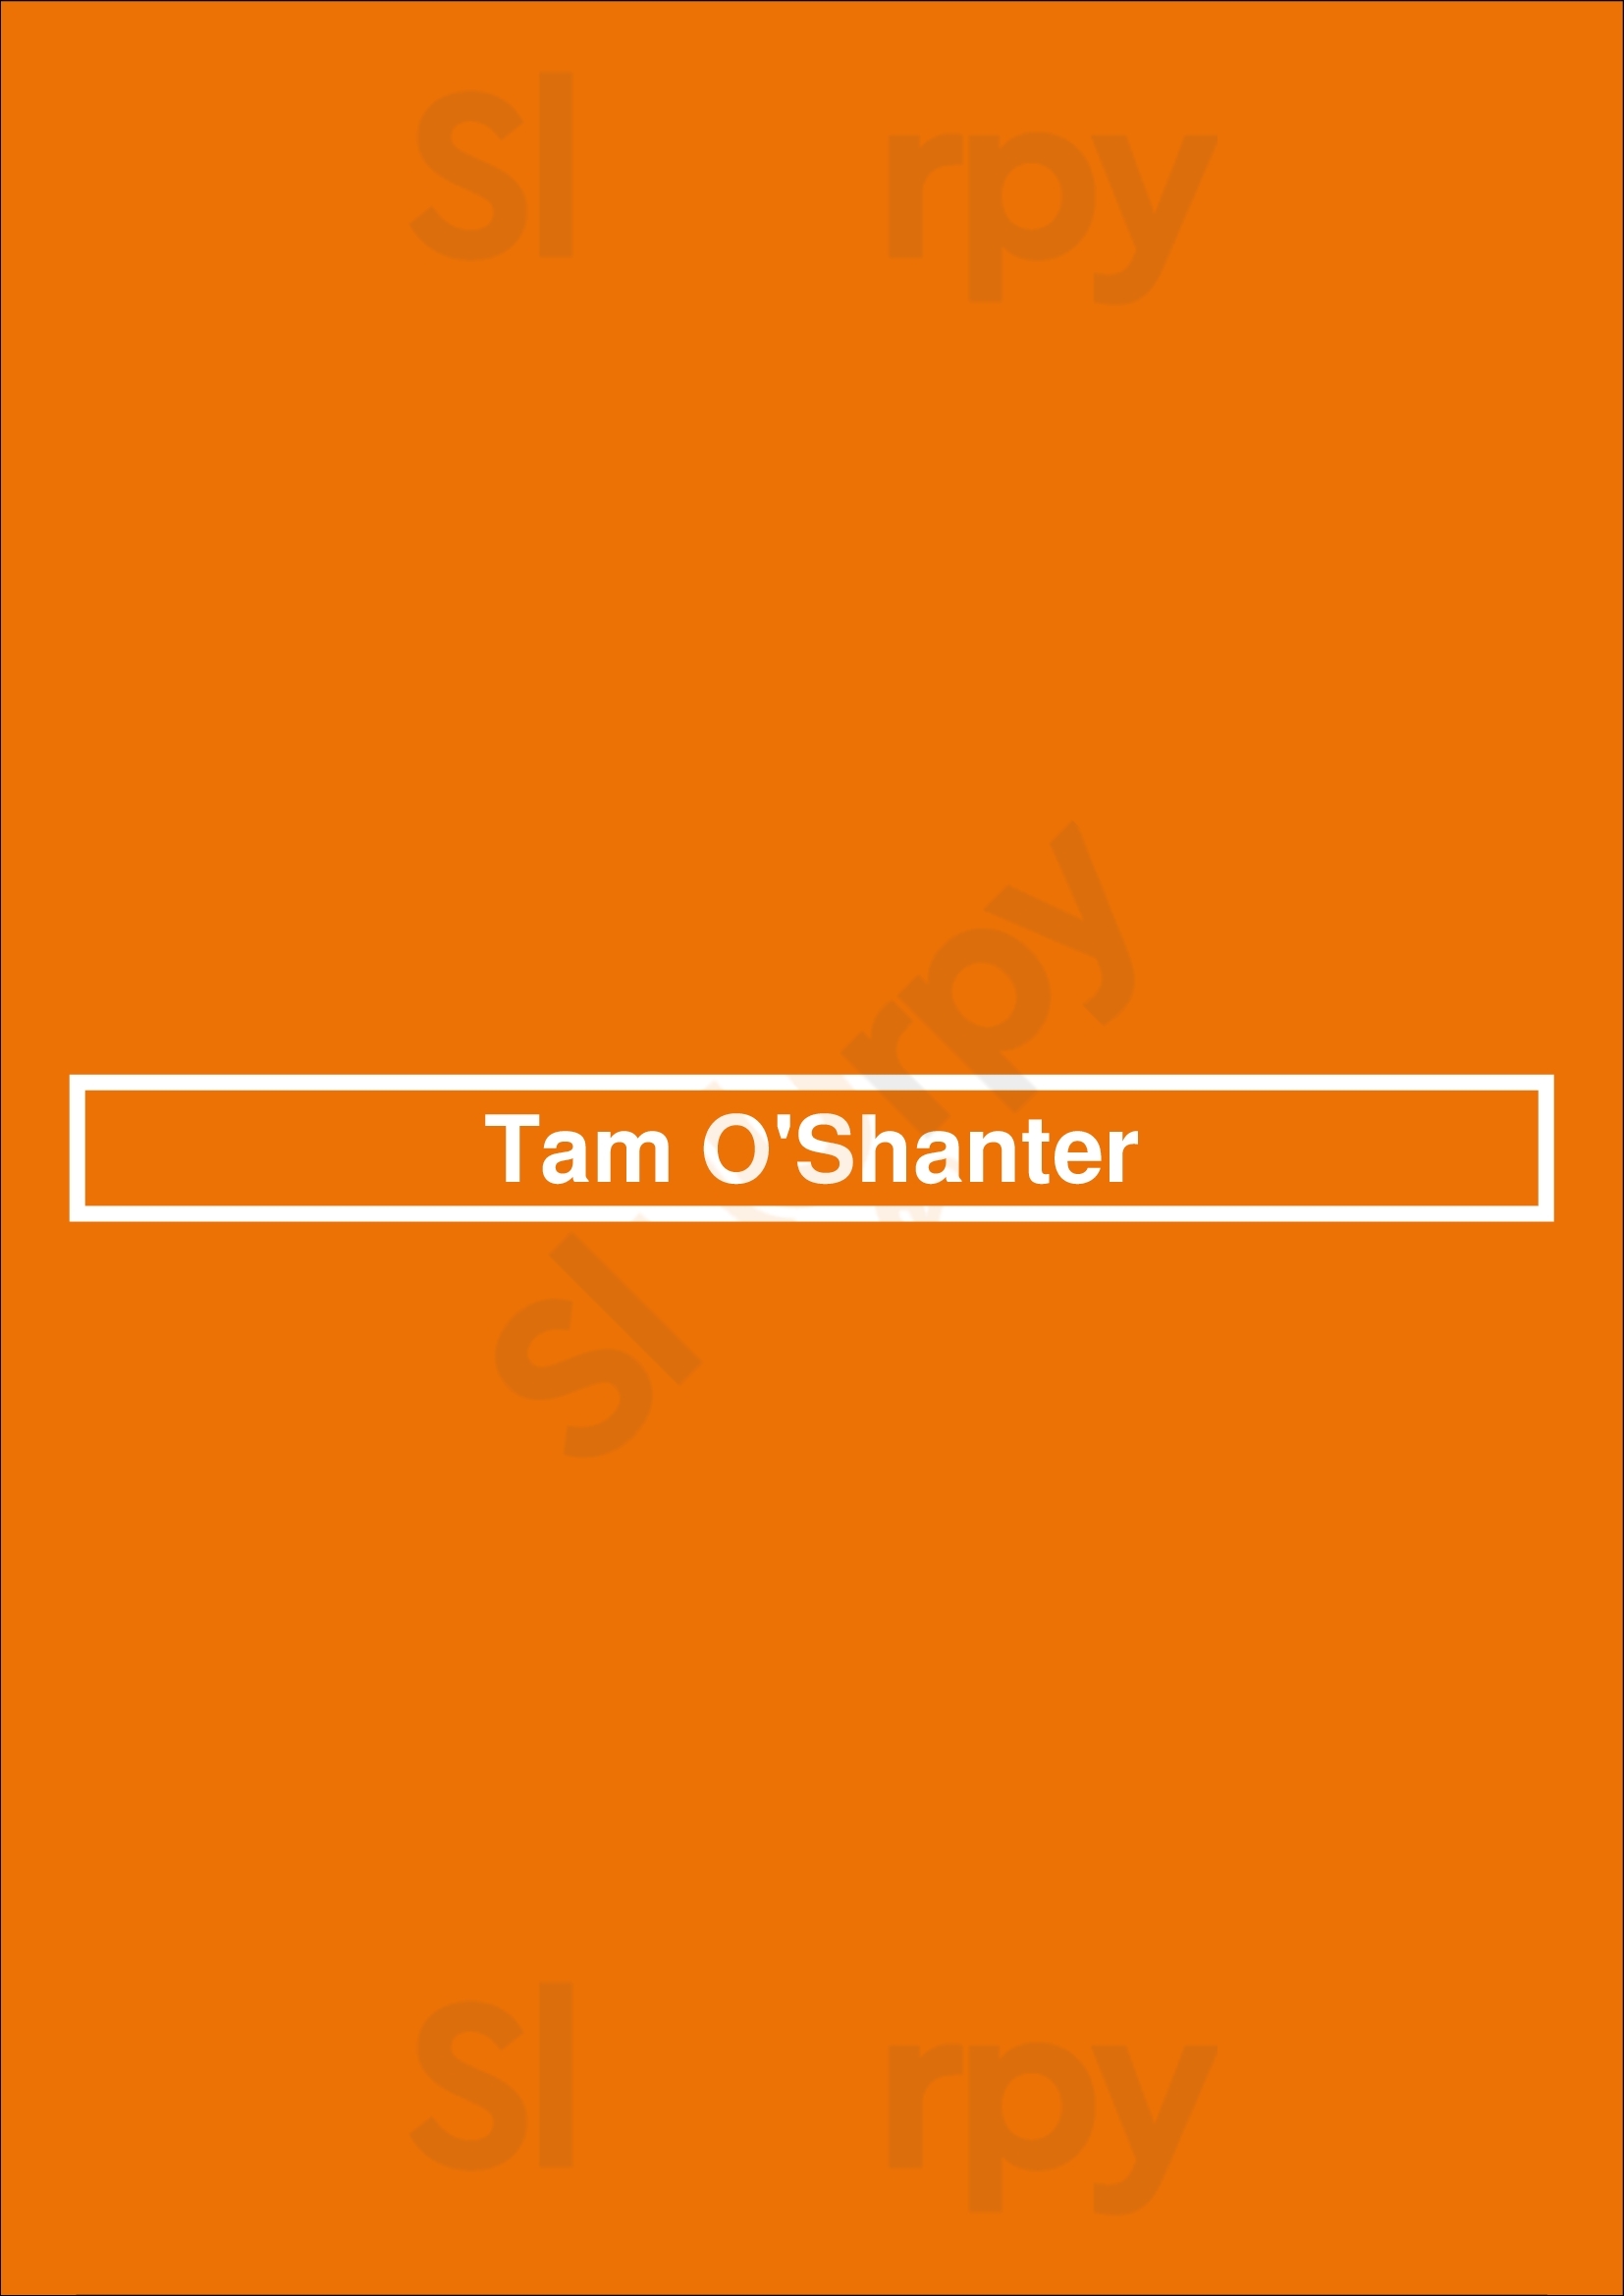 Tam O'shanter Los Angeles Menu - 1